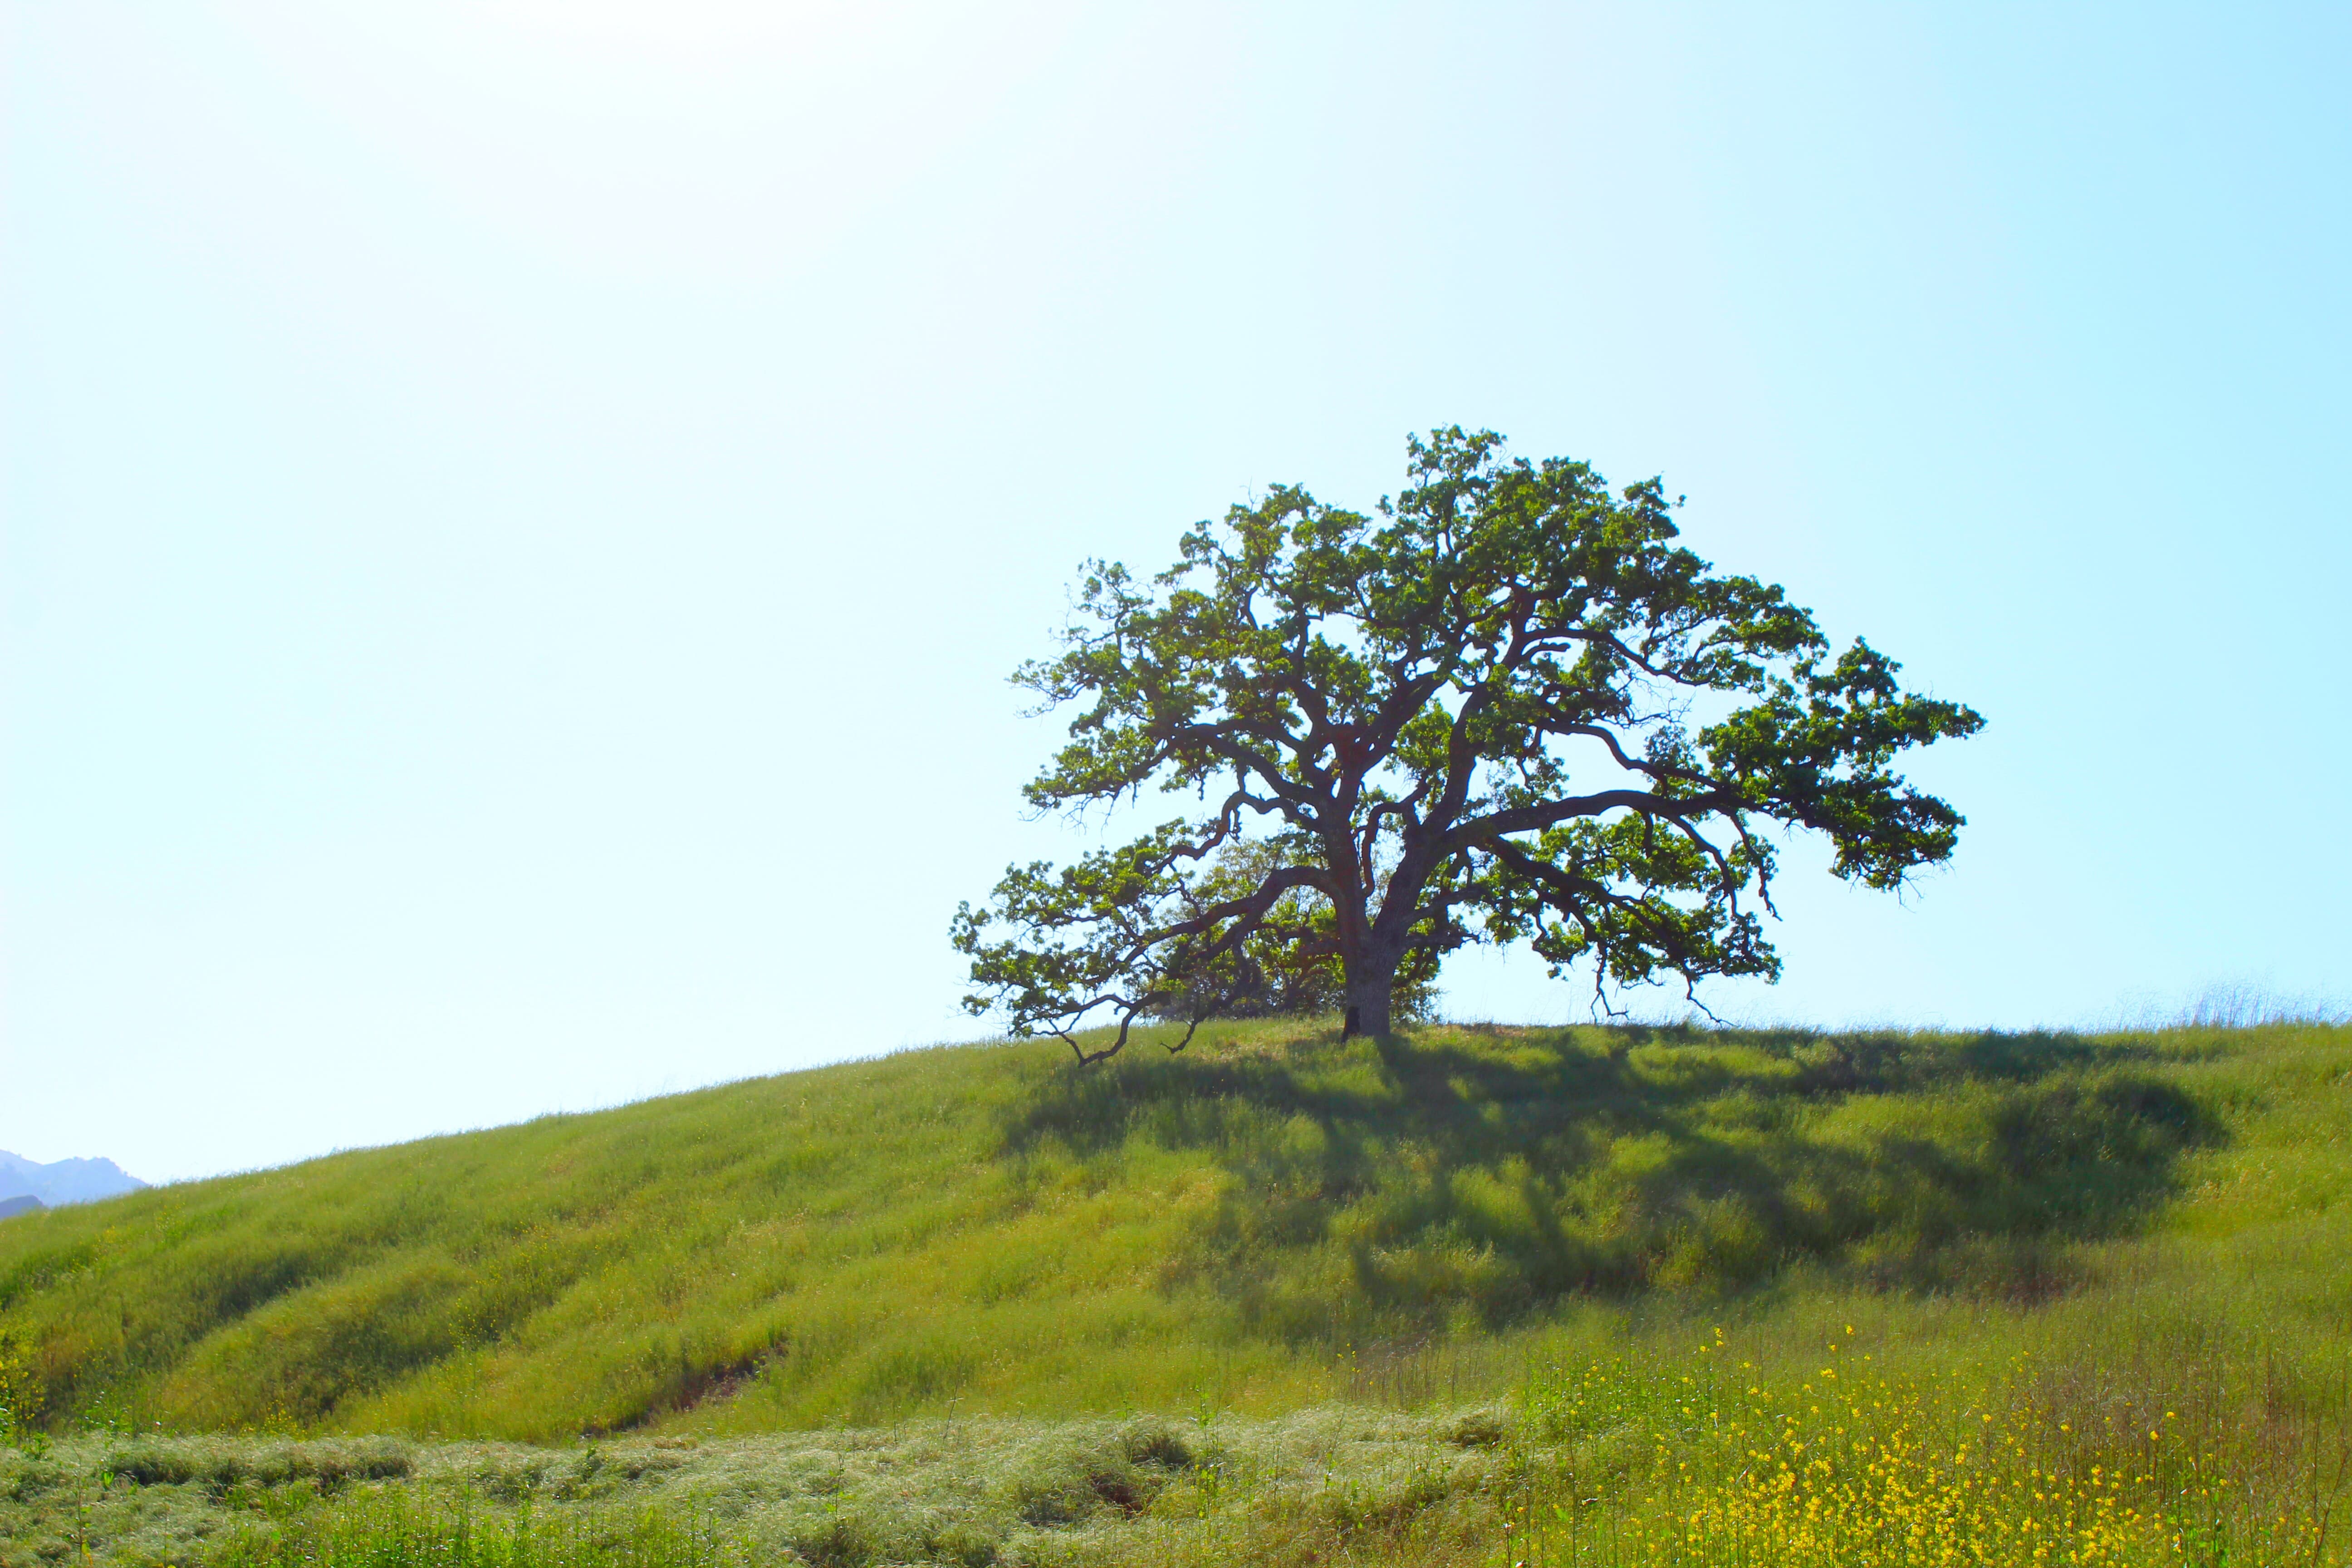 oak in field with bright sunlight